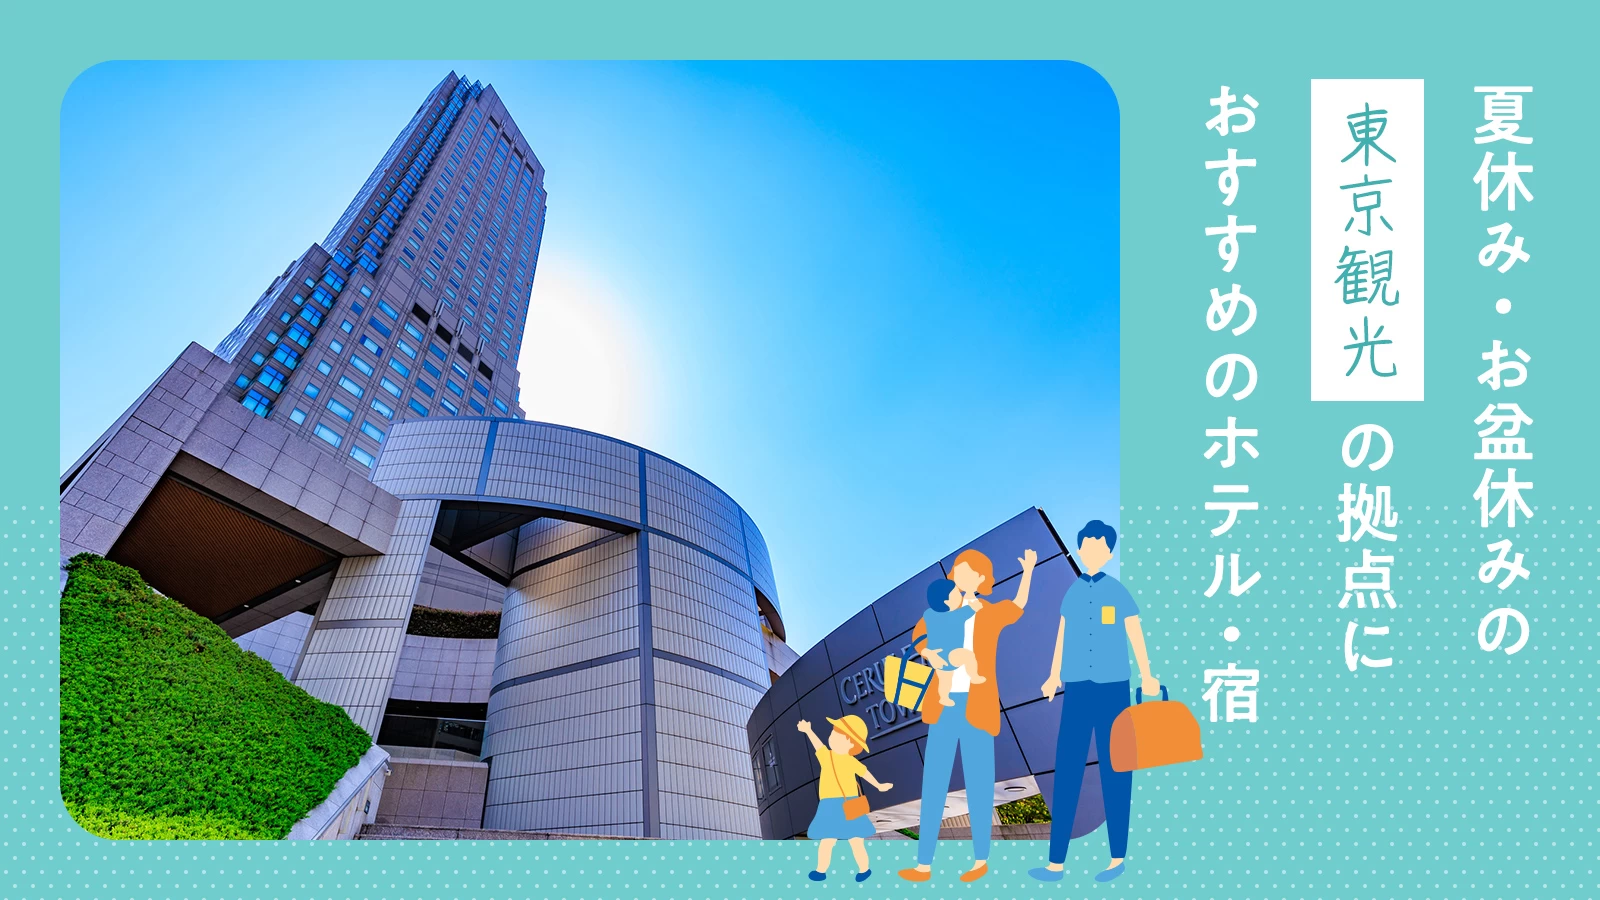 【関東】夏休み・お盆休みの東京観光の拠点におすすめのホテル・宿9選